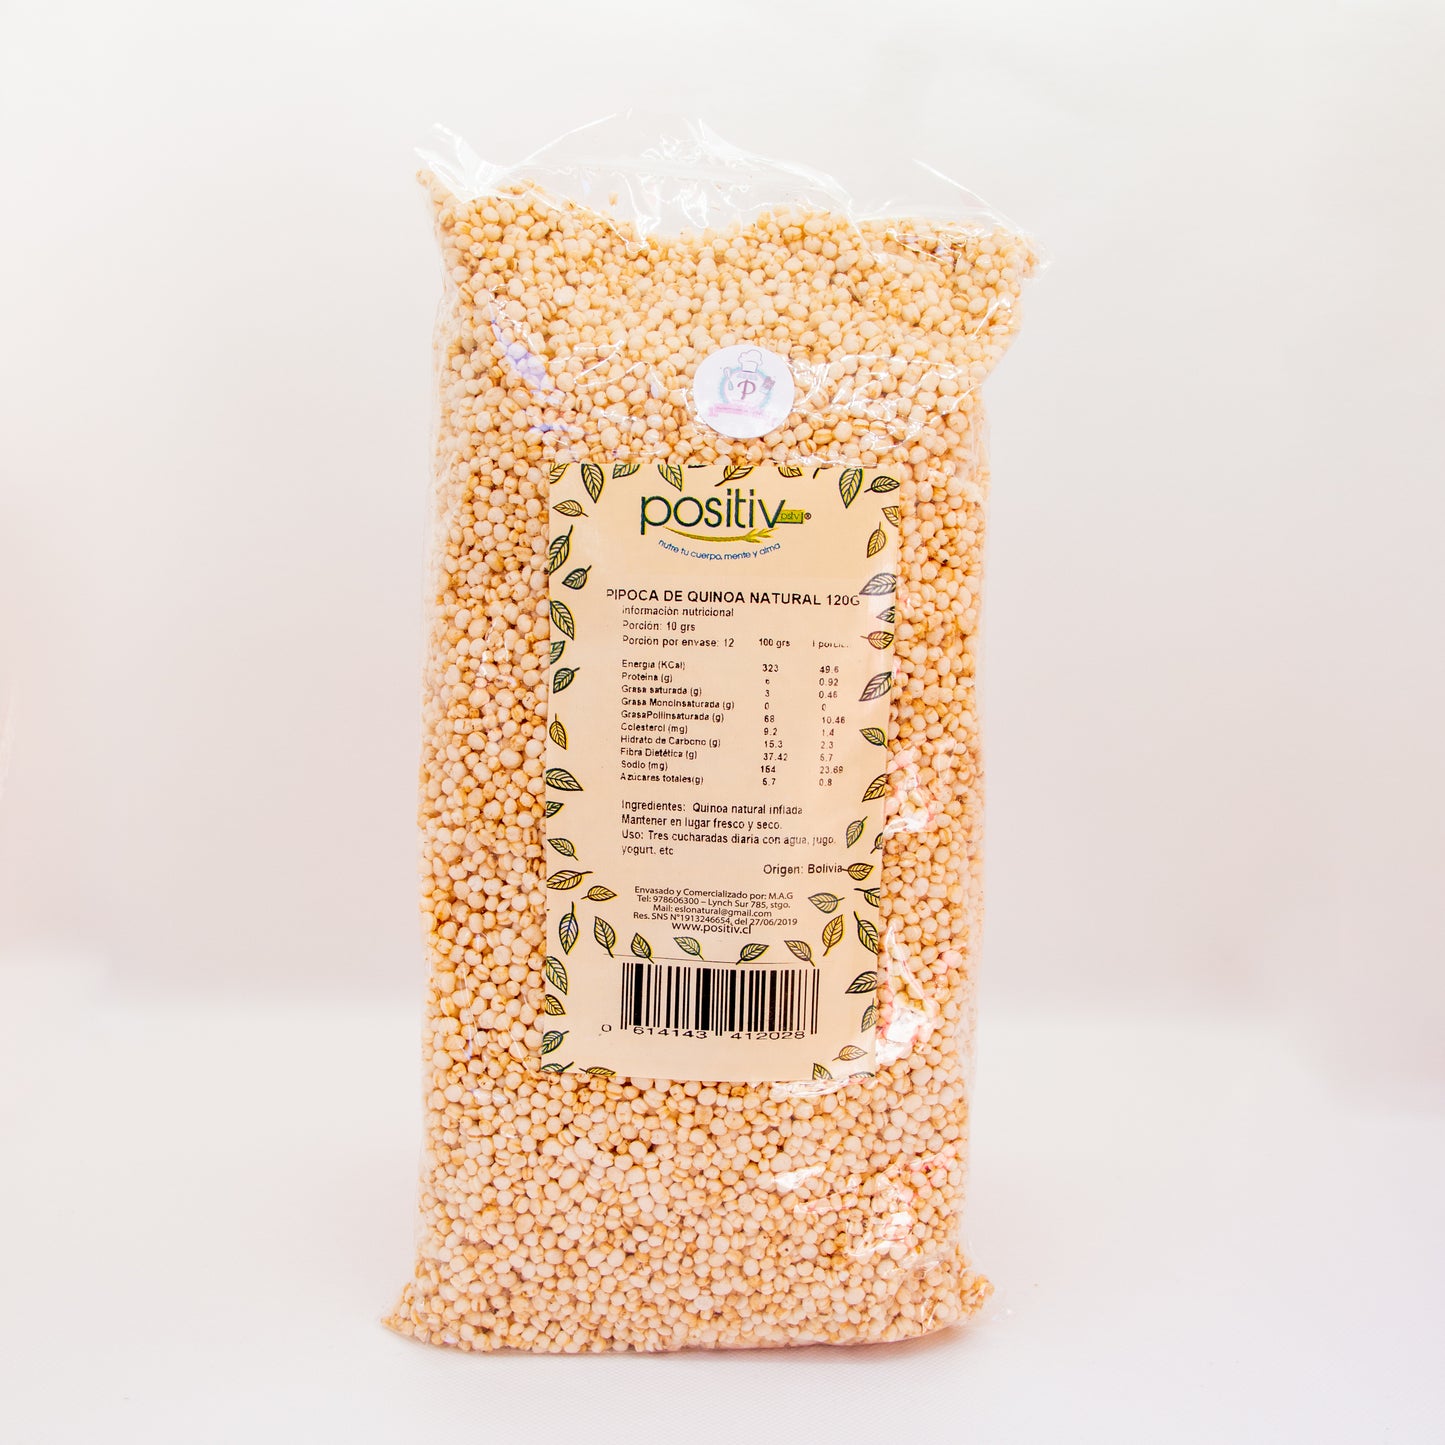 Pipoca de quinoa natural "Positiv"